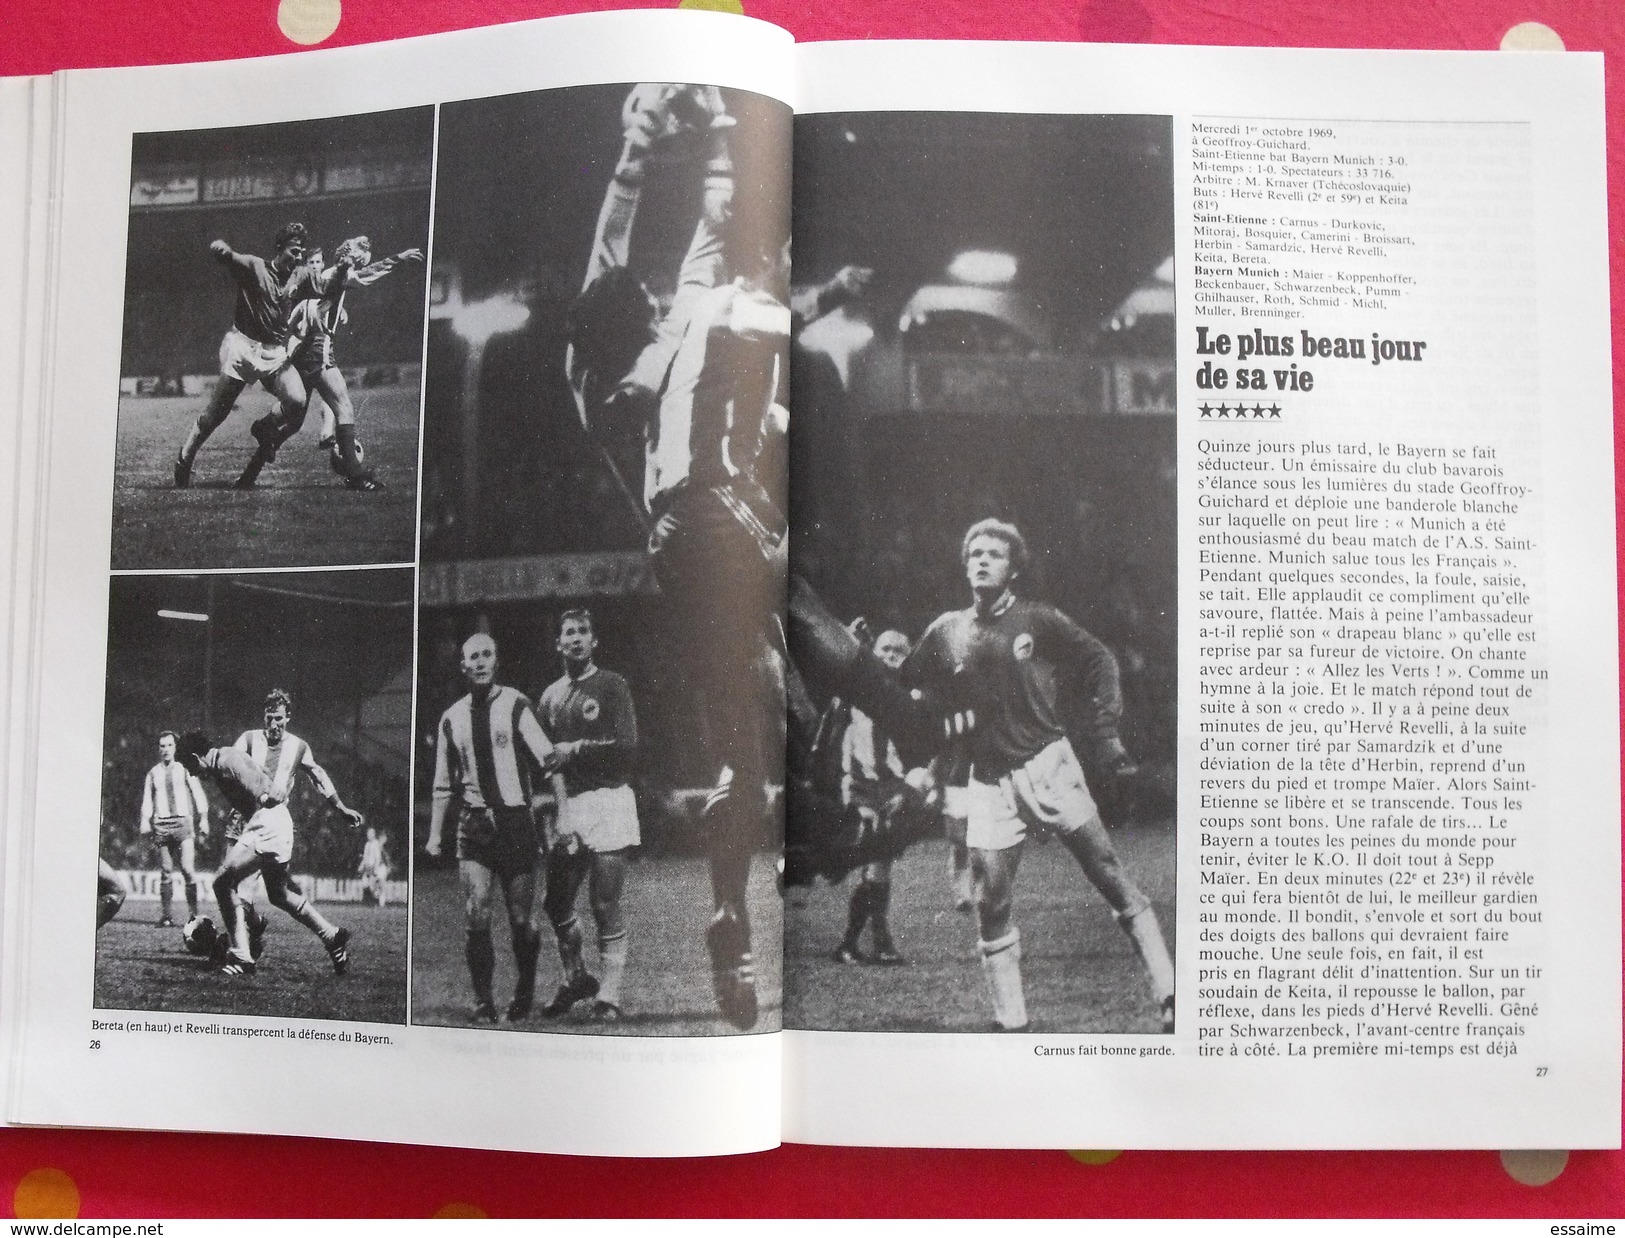 RTL présente Les vets 1957/1981. Saint-Etienne. football. 128 pages nombreuses photos. 1981